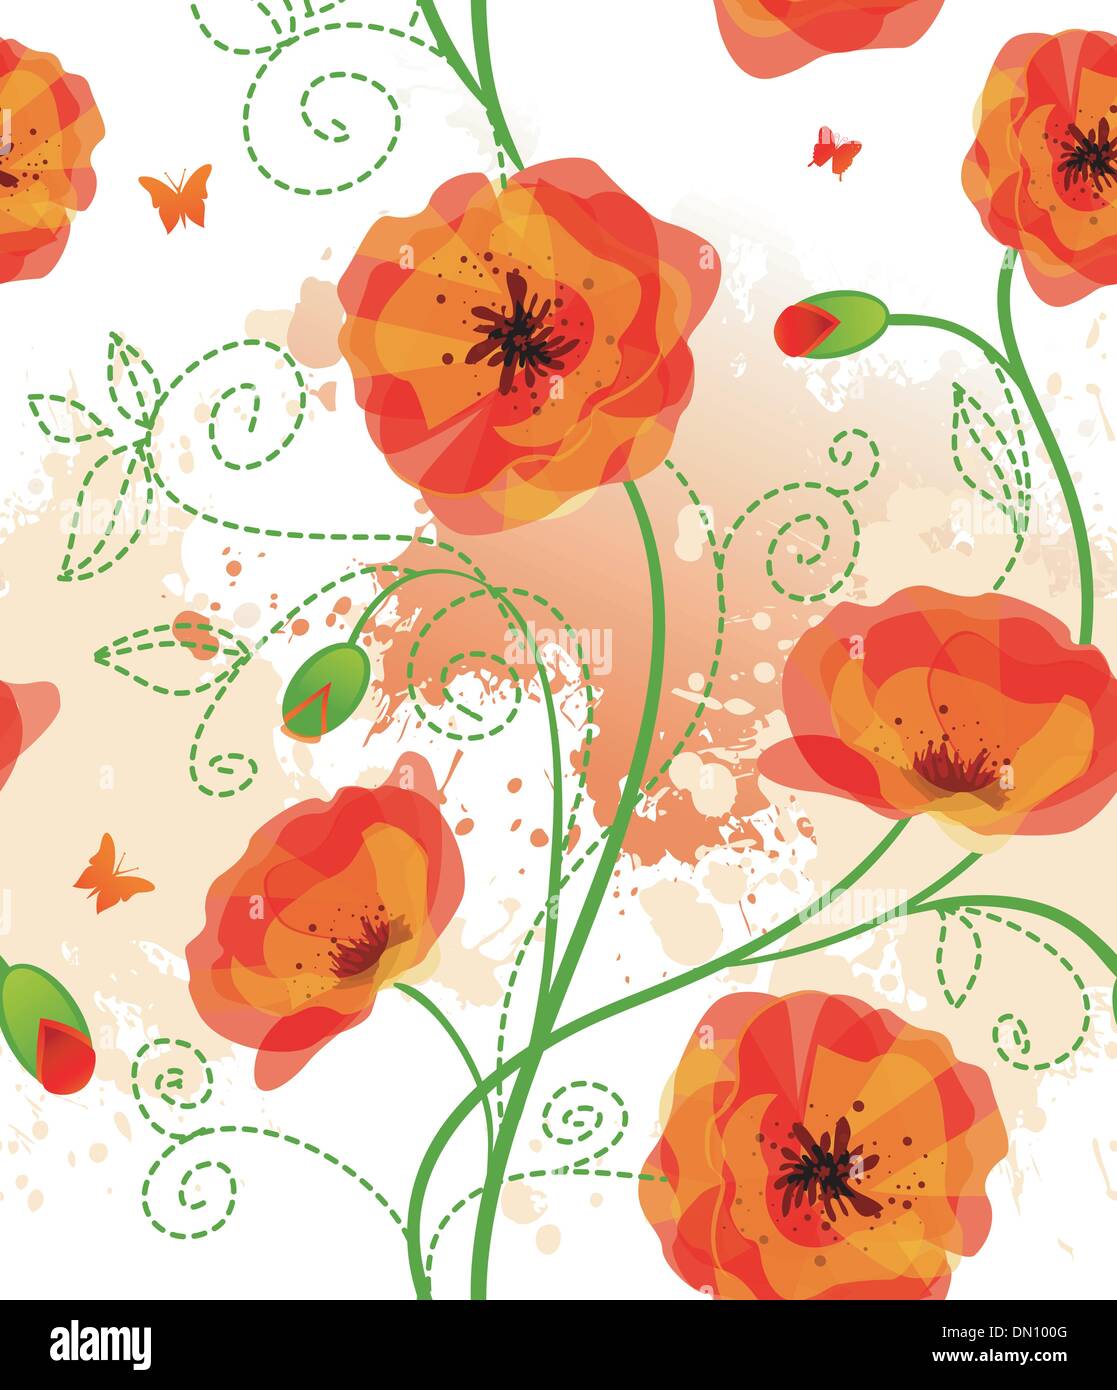 Details about   Vtg Poppy Belt Buckle Print Flower Whimsical Floral Art Deco Nouveau Painting 